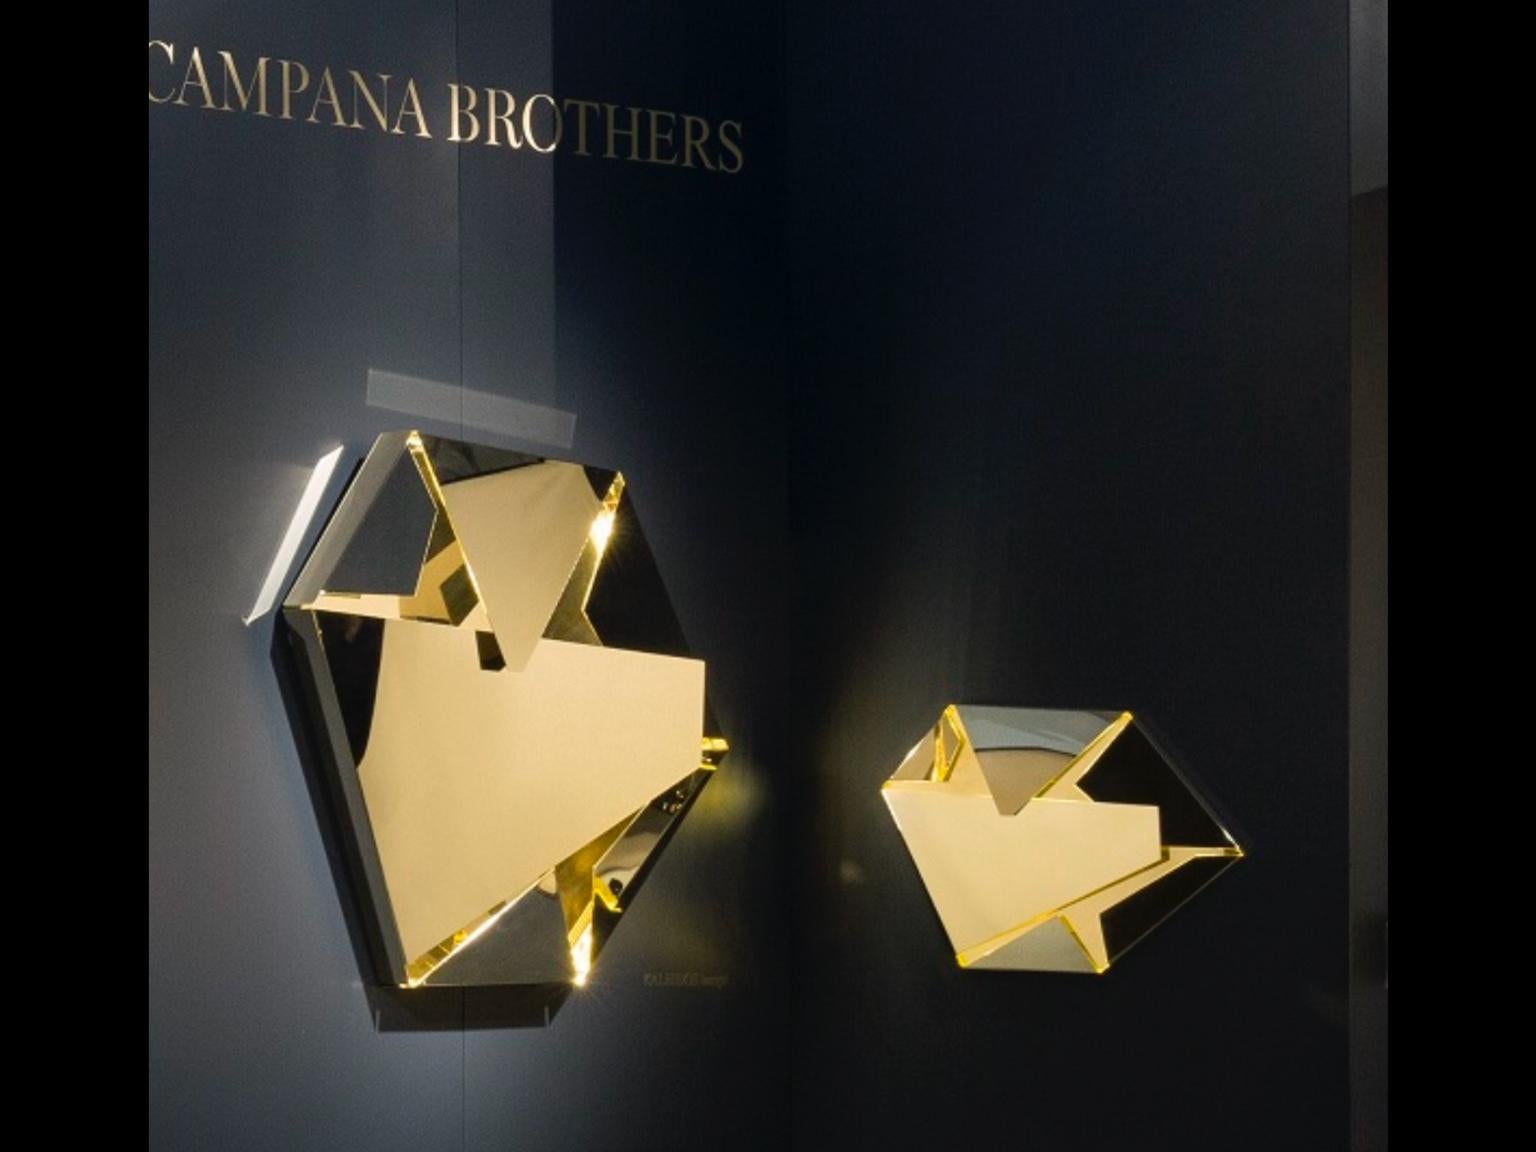 Cette applique sculpturale en acier inoxydable a été conçue par Campana Brothers. La base en laiton et les miroirs dorés créent un kaléidoscope de tons dorés et de reflets. La pièce peut être utilisée comme lampe car elle est rétroéclairée'.
Bandes